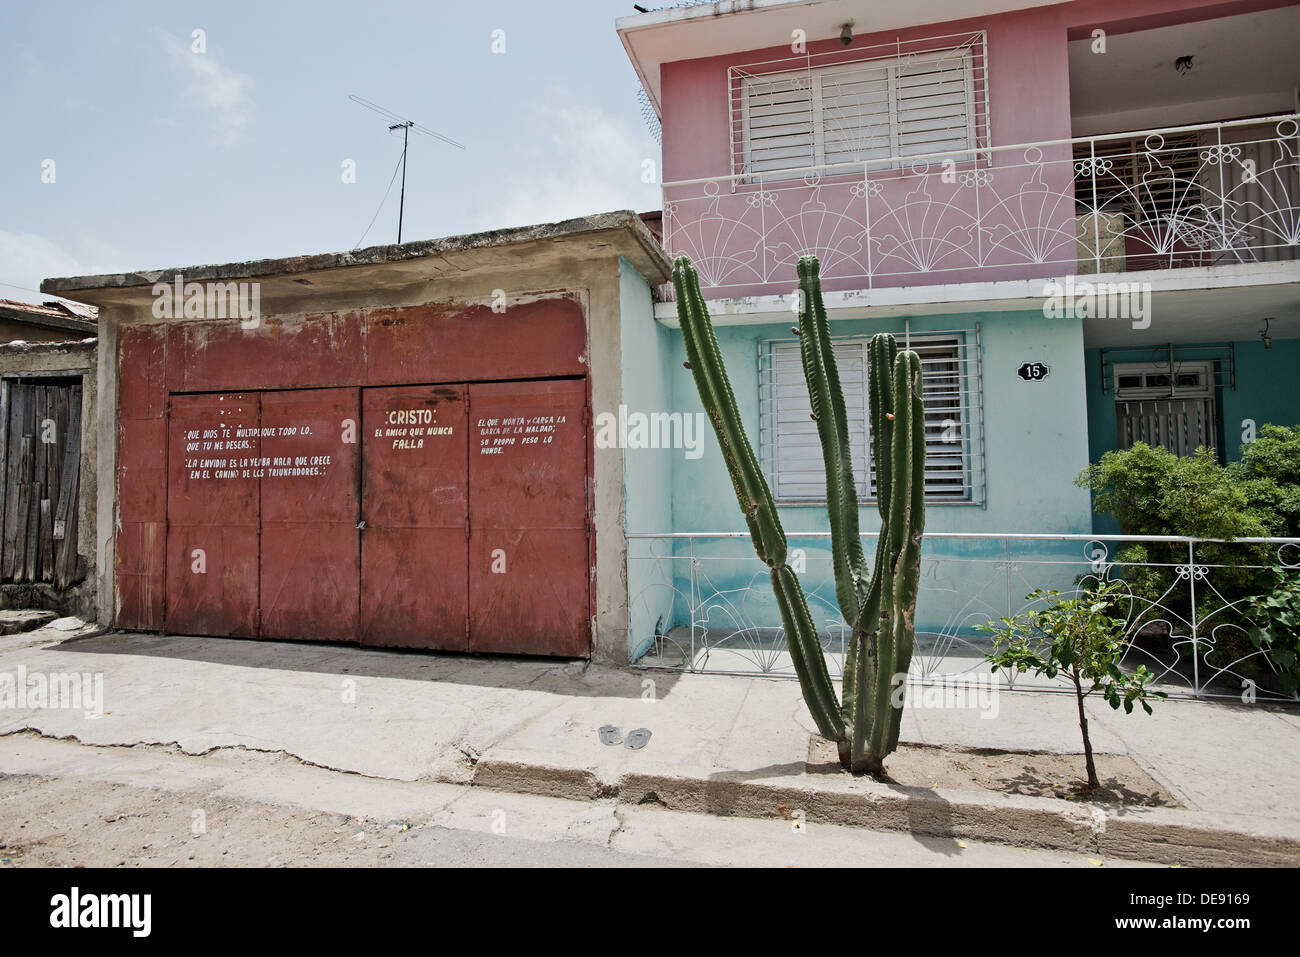 Santiago de Cuba, Cuba, Private house with Christian slogans on the facade Stock Photo